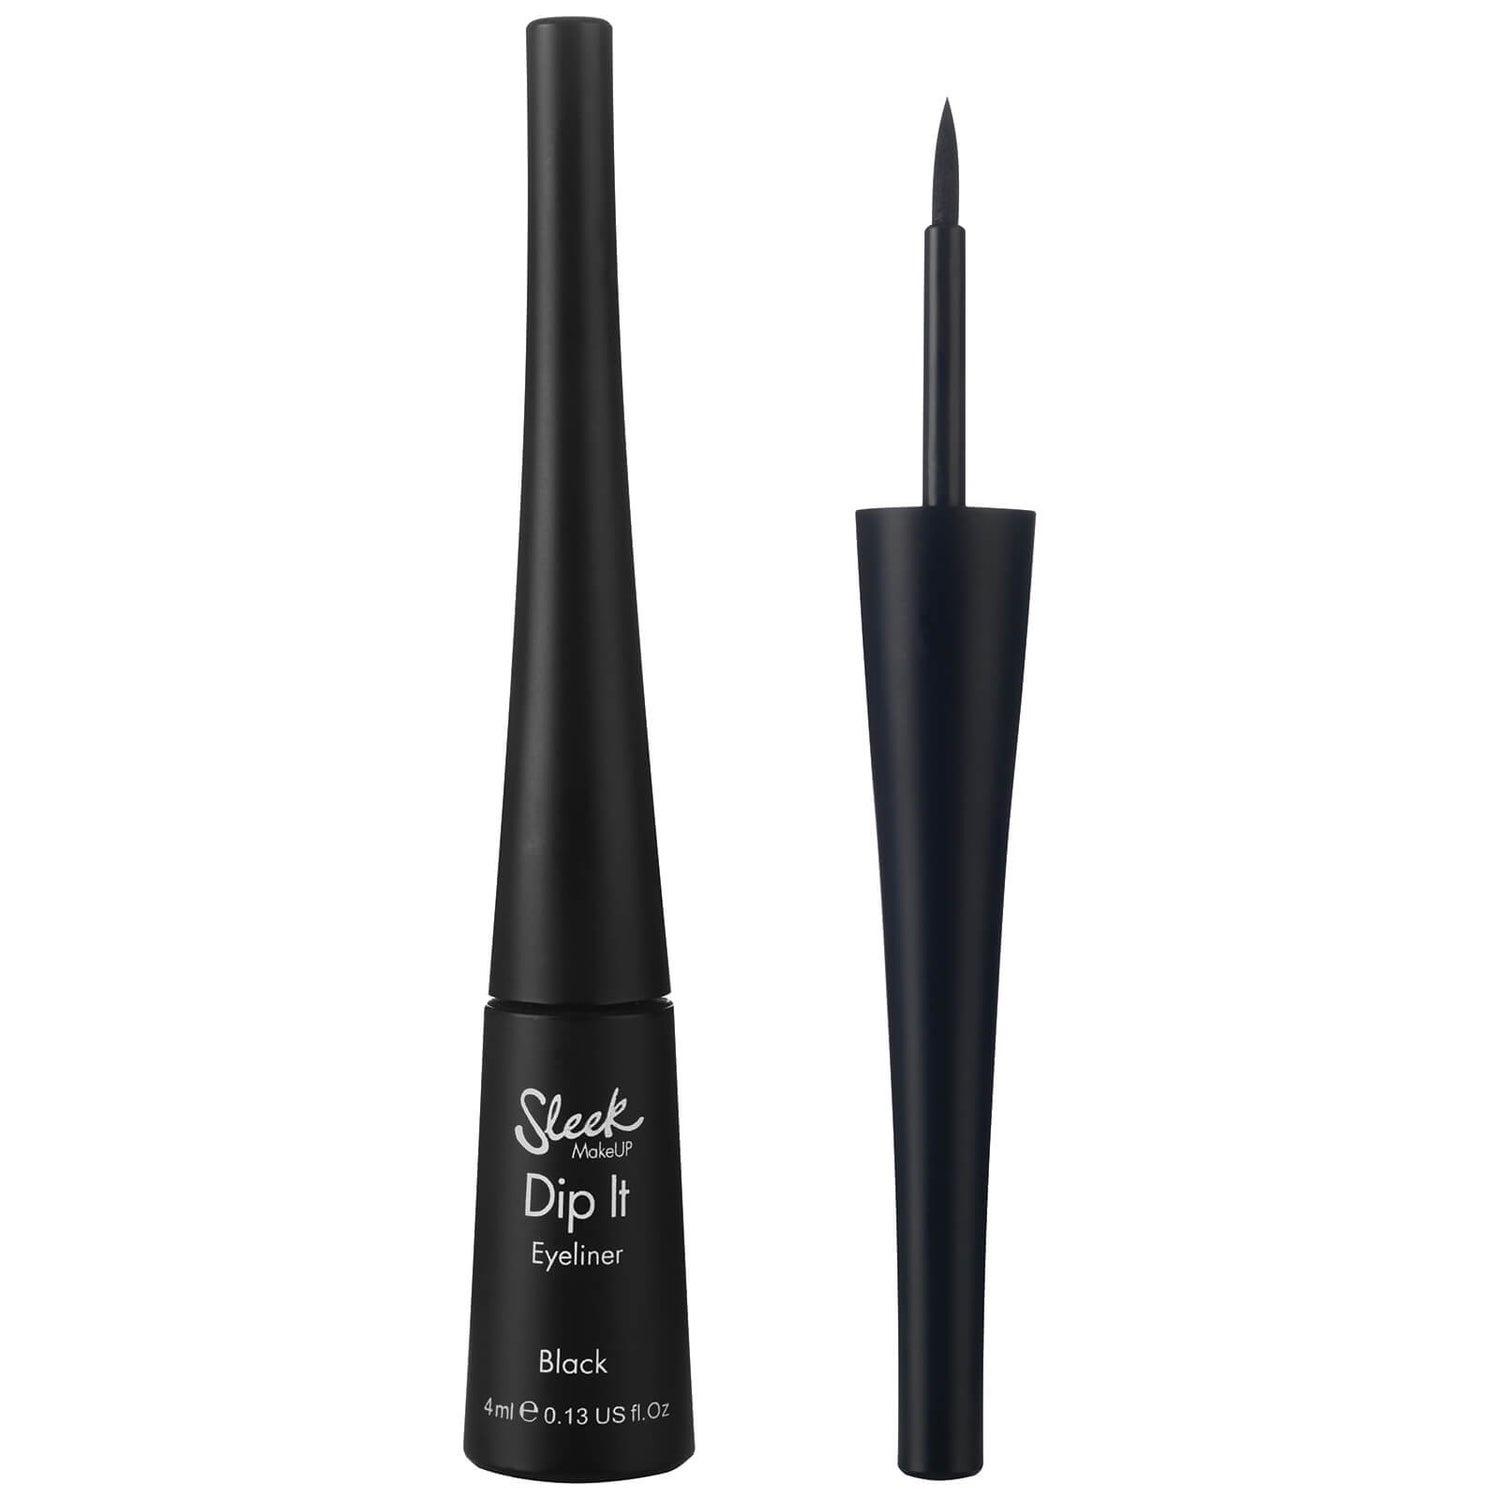 Sleek MakeUP Dip It Eyeliner - Black 4ml